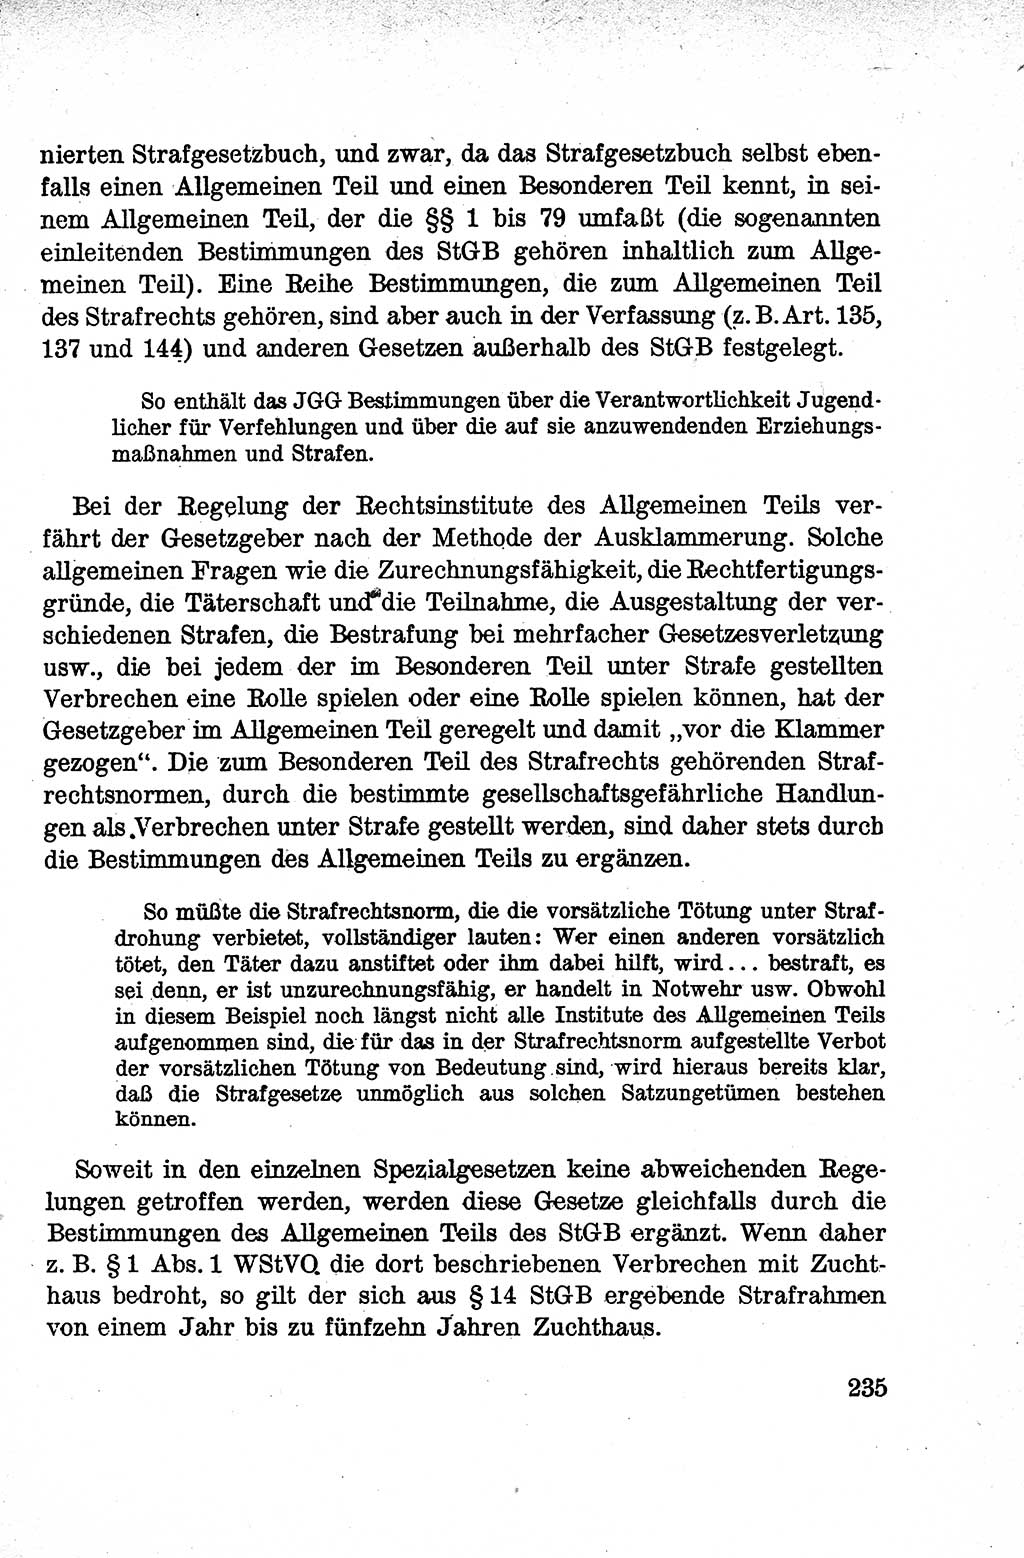 Lehrbuch des Strafrechts der Deutschen Demokratischen Republik (DDR), Allgemeiner Teil 1959, Seite 235 (Lb. Strafr. DDR AT 1959, S. 235)